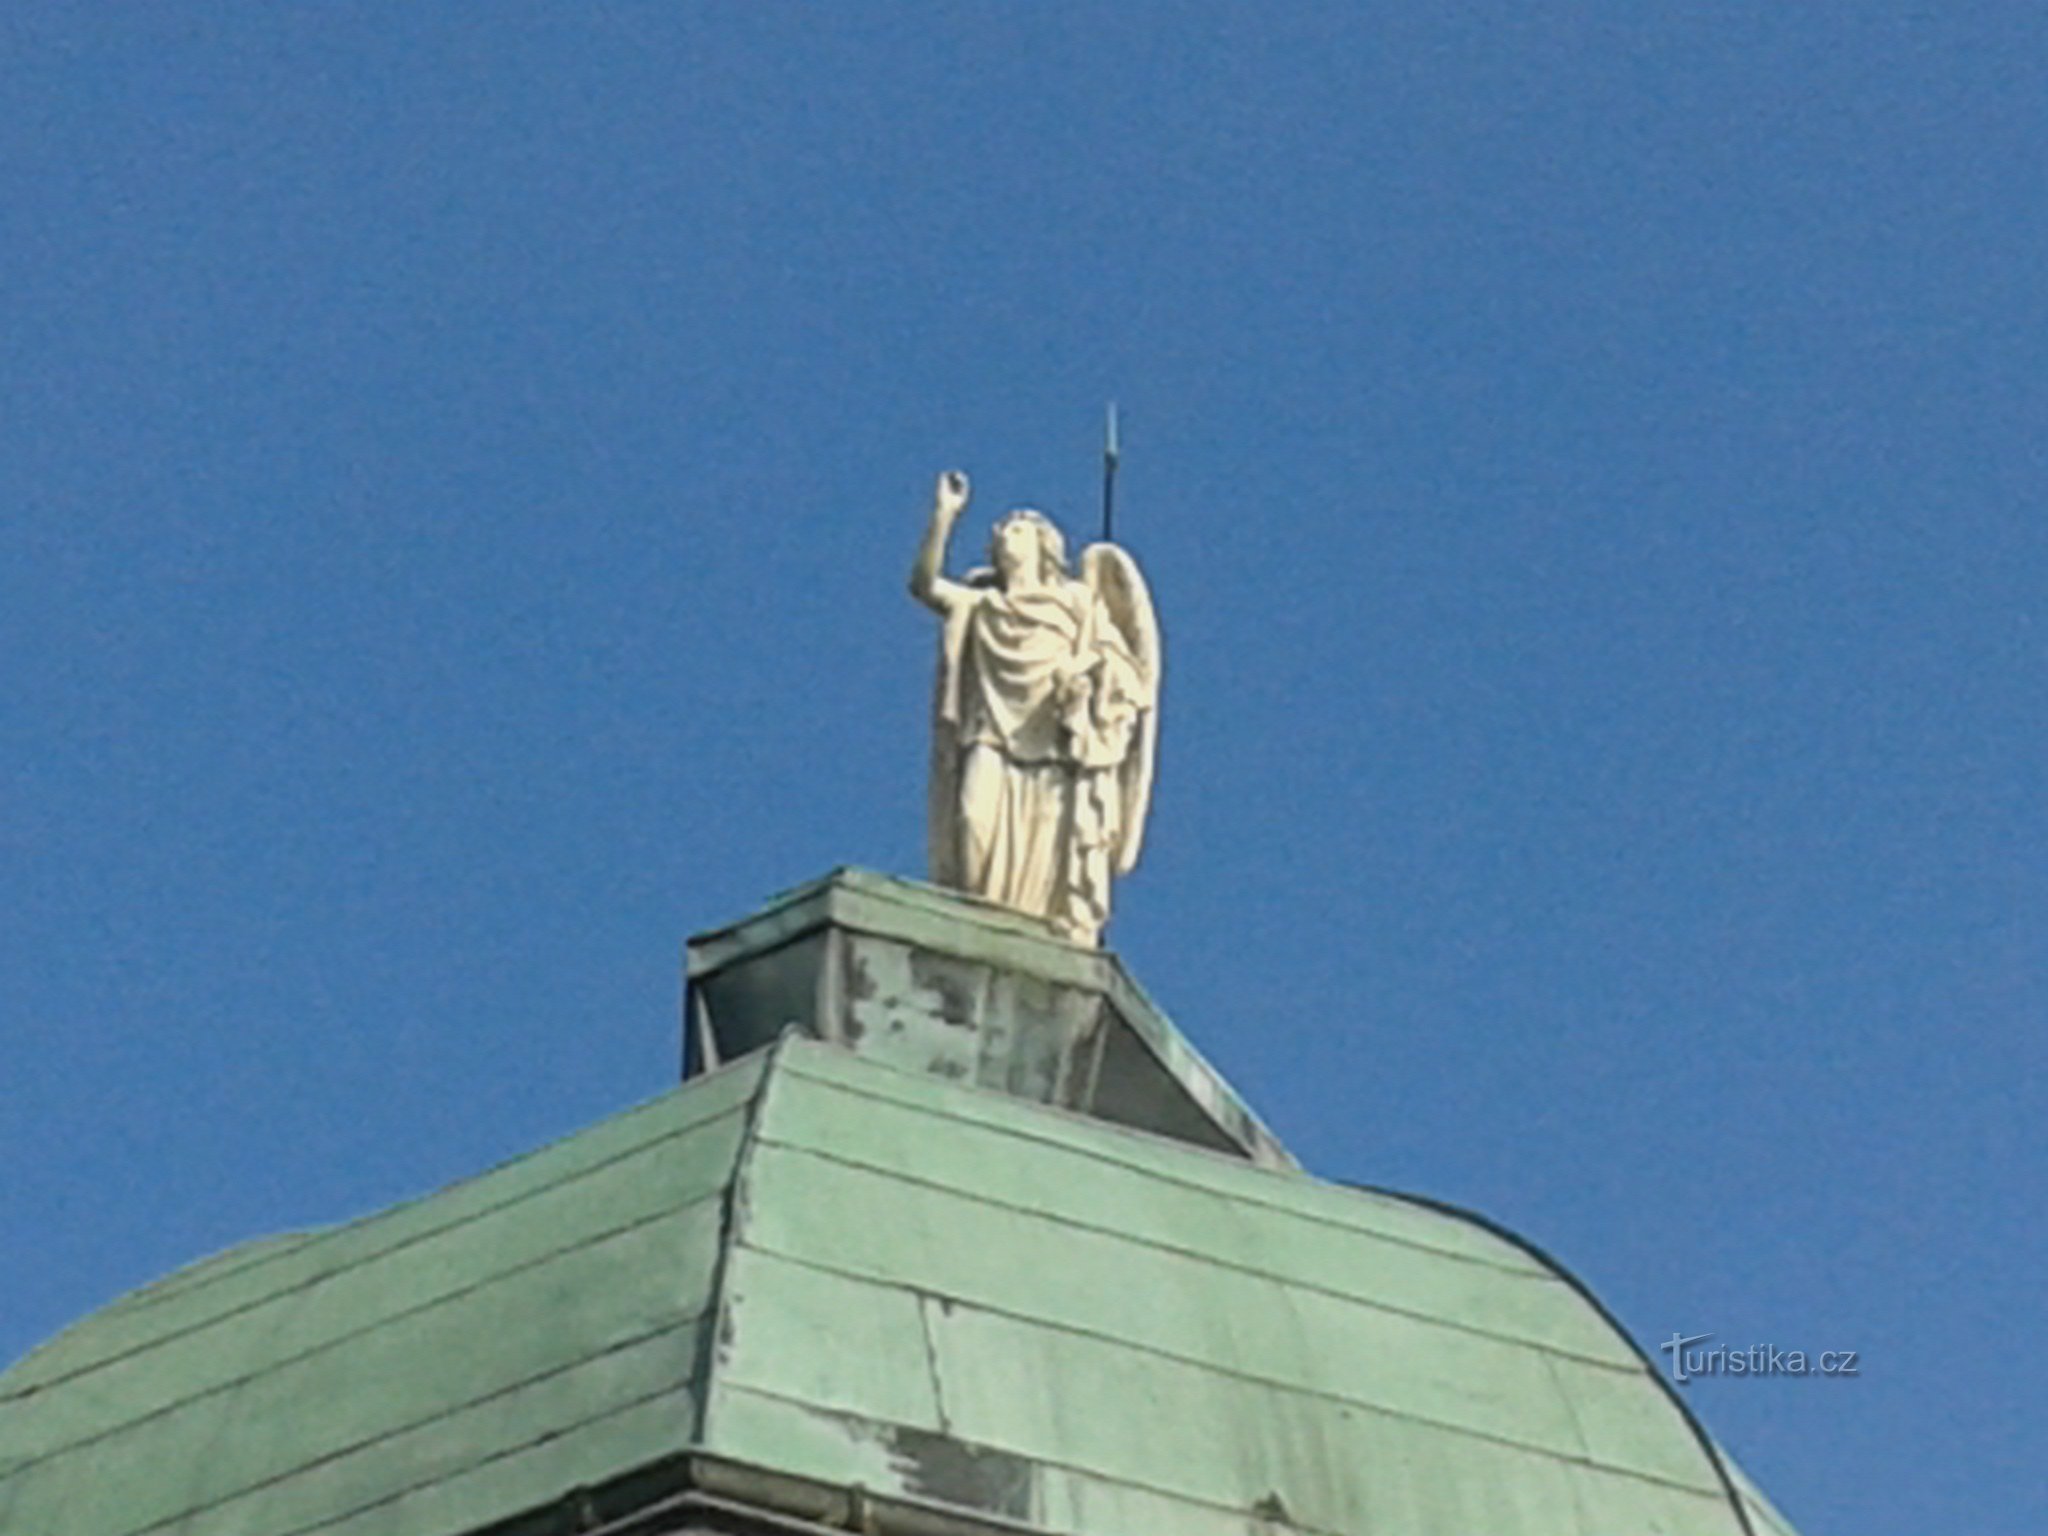 行政大楼上的天使雕像